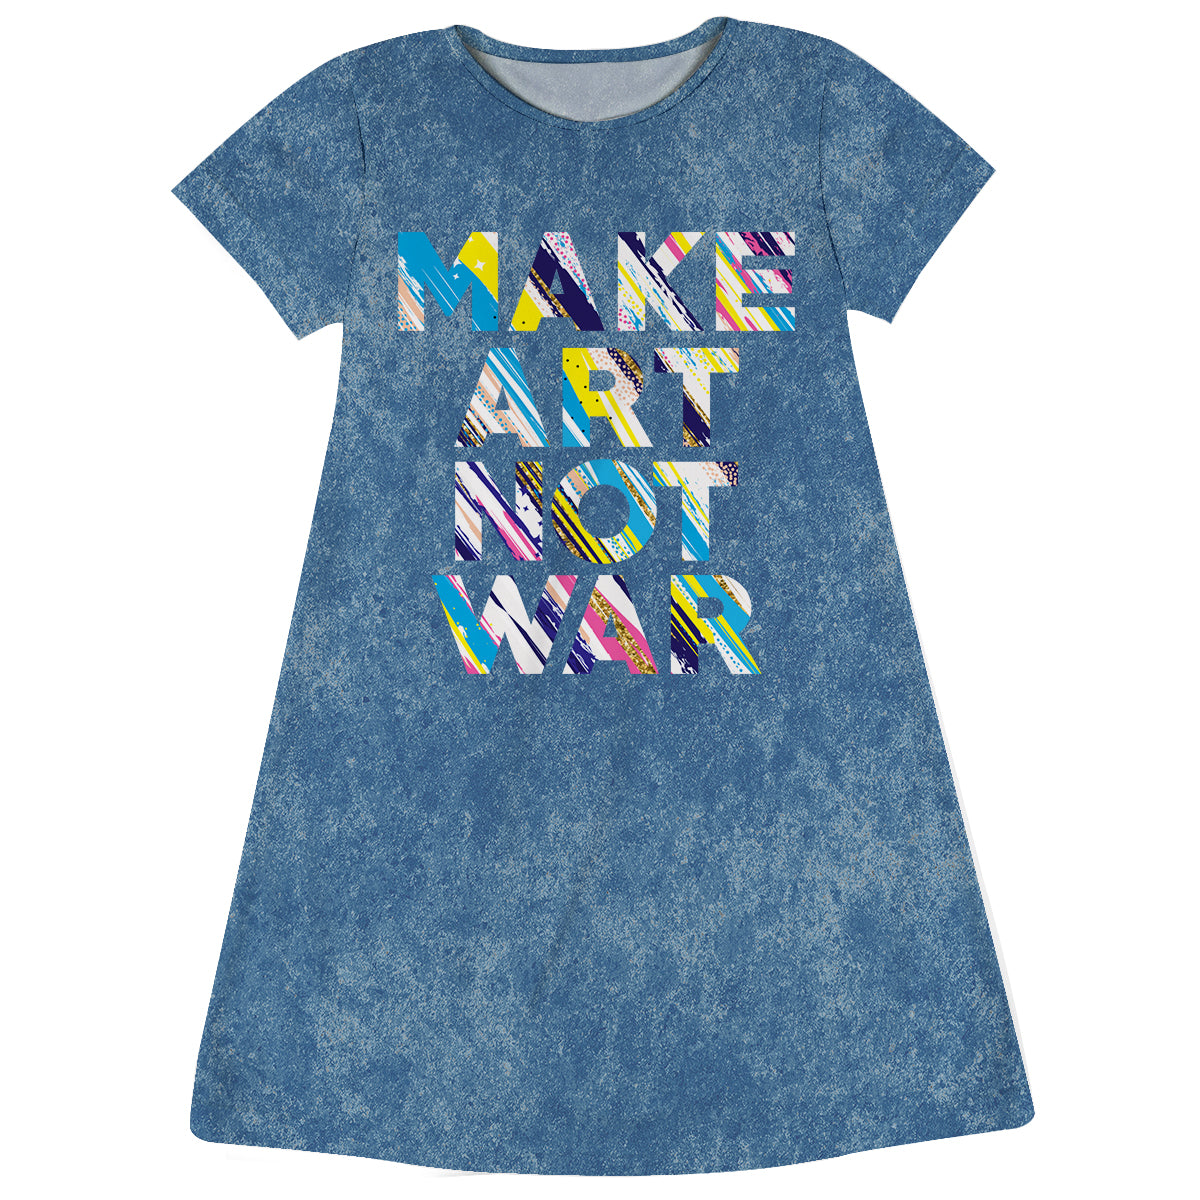 Make Art Not War Blue Denim Short Sleeve A Line Dress - Wimziy&Co.